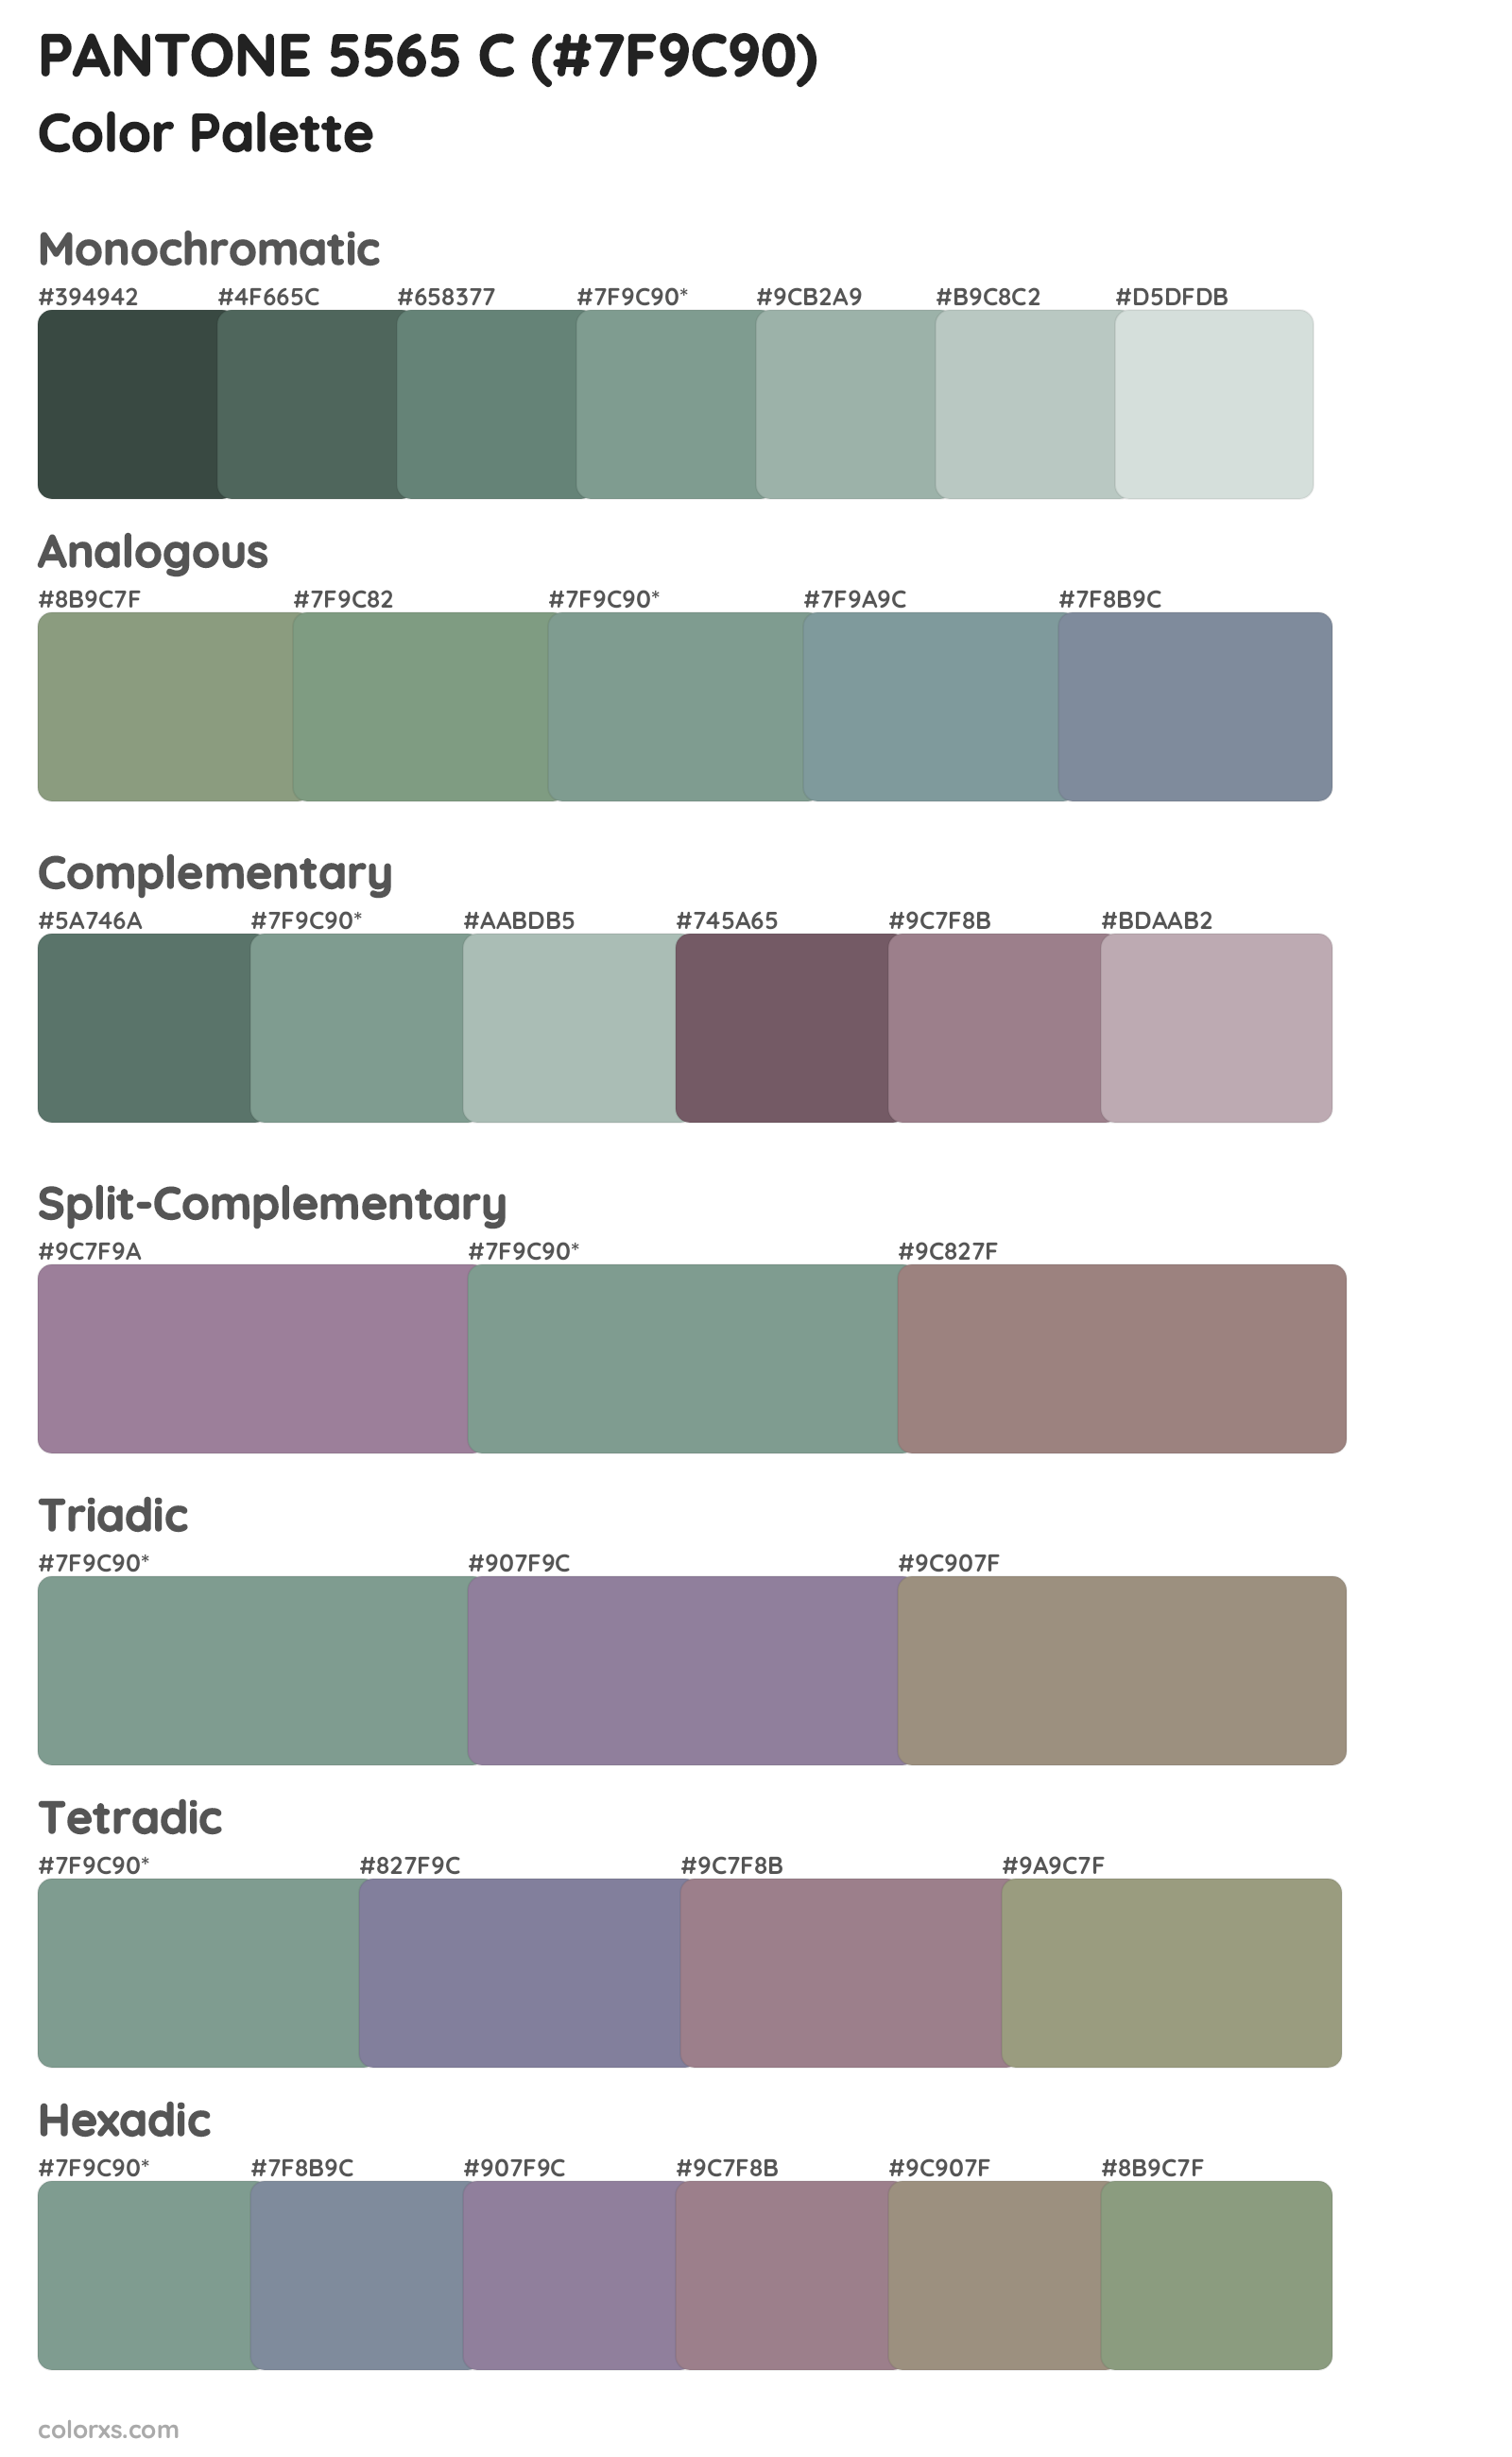 PANTONE 5565 C Color Scheme Palettes